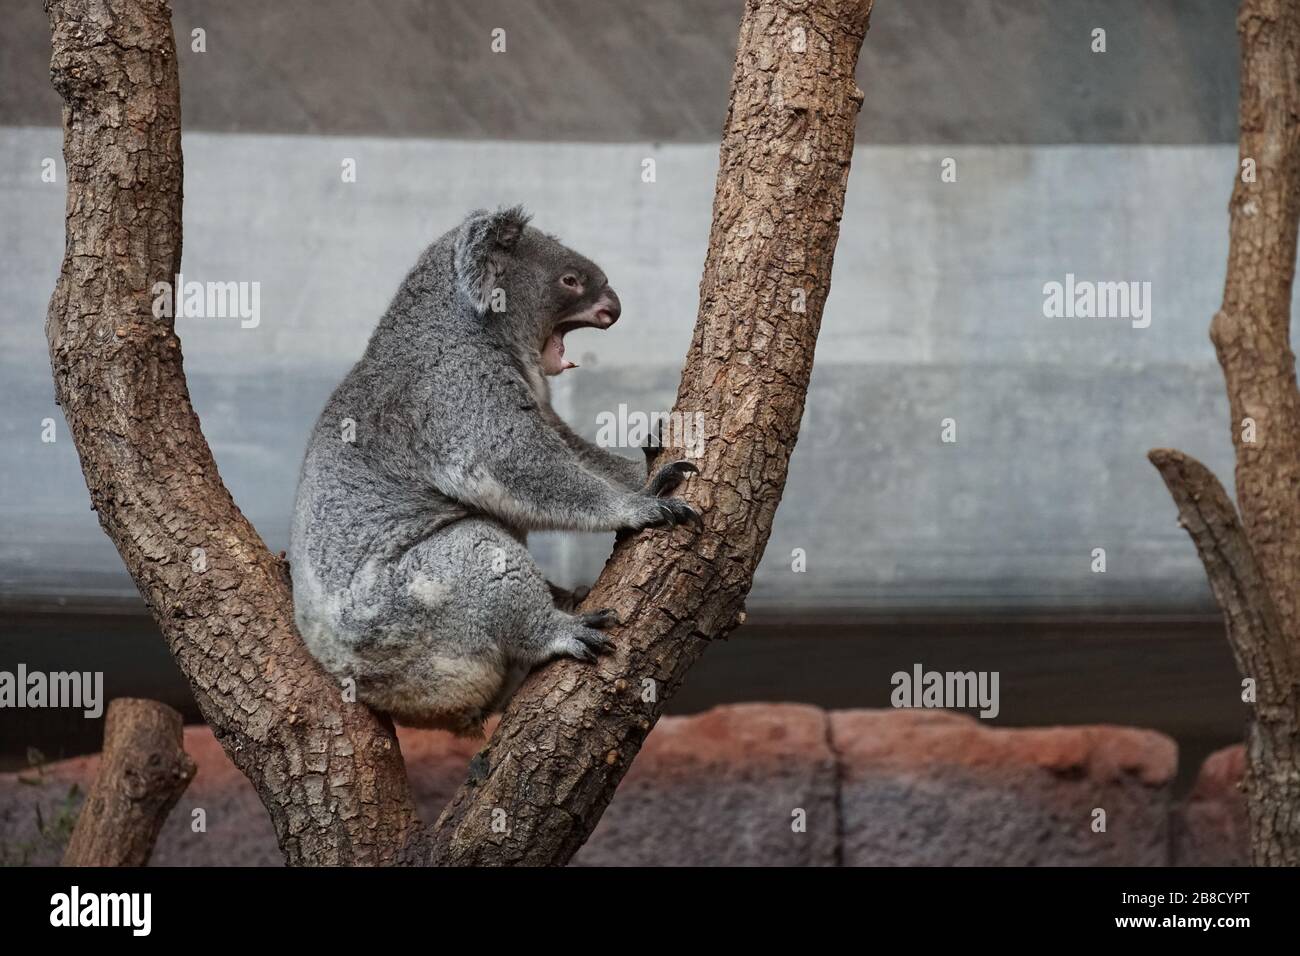 Koala, Phascolarctos cinereus, marsupial herbivore arboricole vivant en Australie, assis dans un arbre en vue latérale Banque D'Images